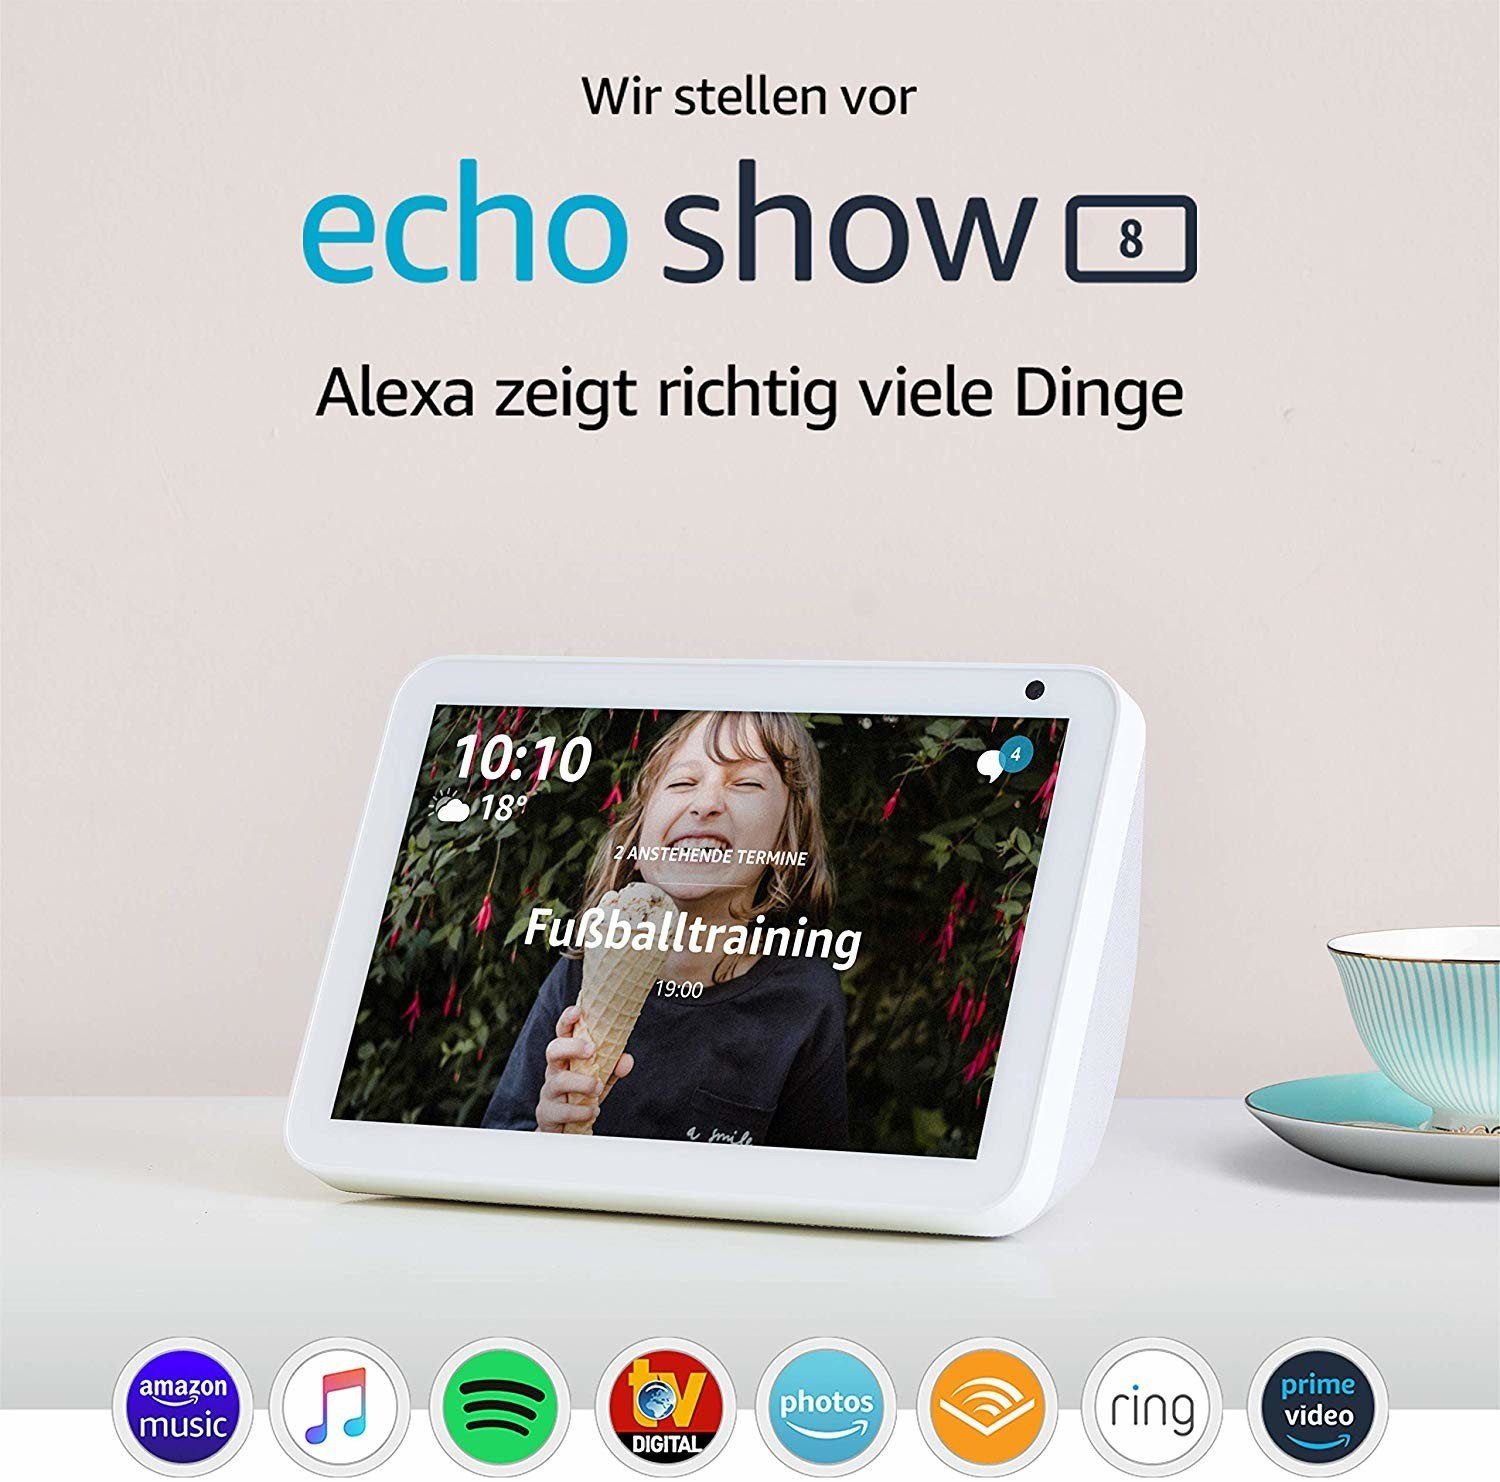 Smart Sprachsteuerung Hub Streaming Show Home 8 Alexa Echo Boxen Amazon Bildschirm weiß